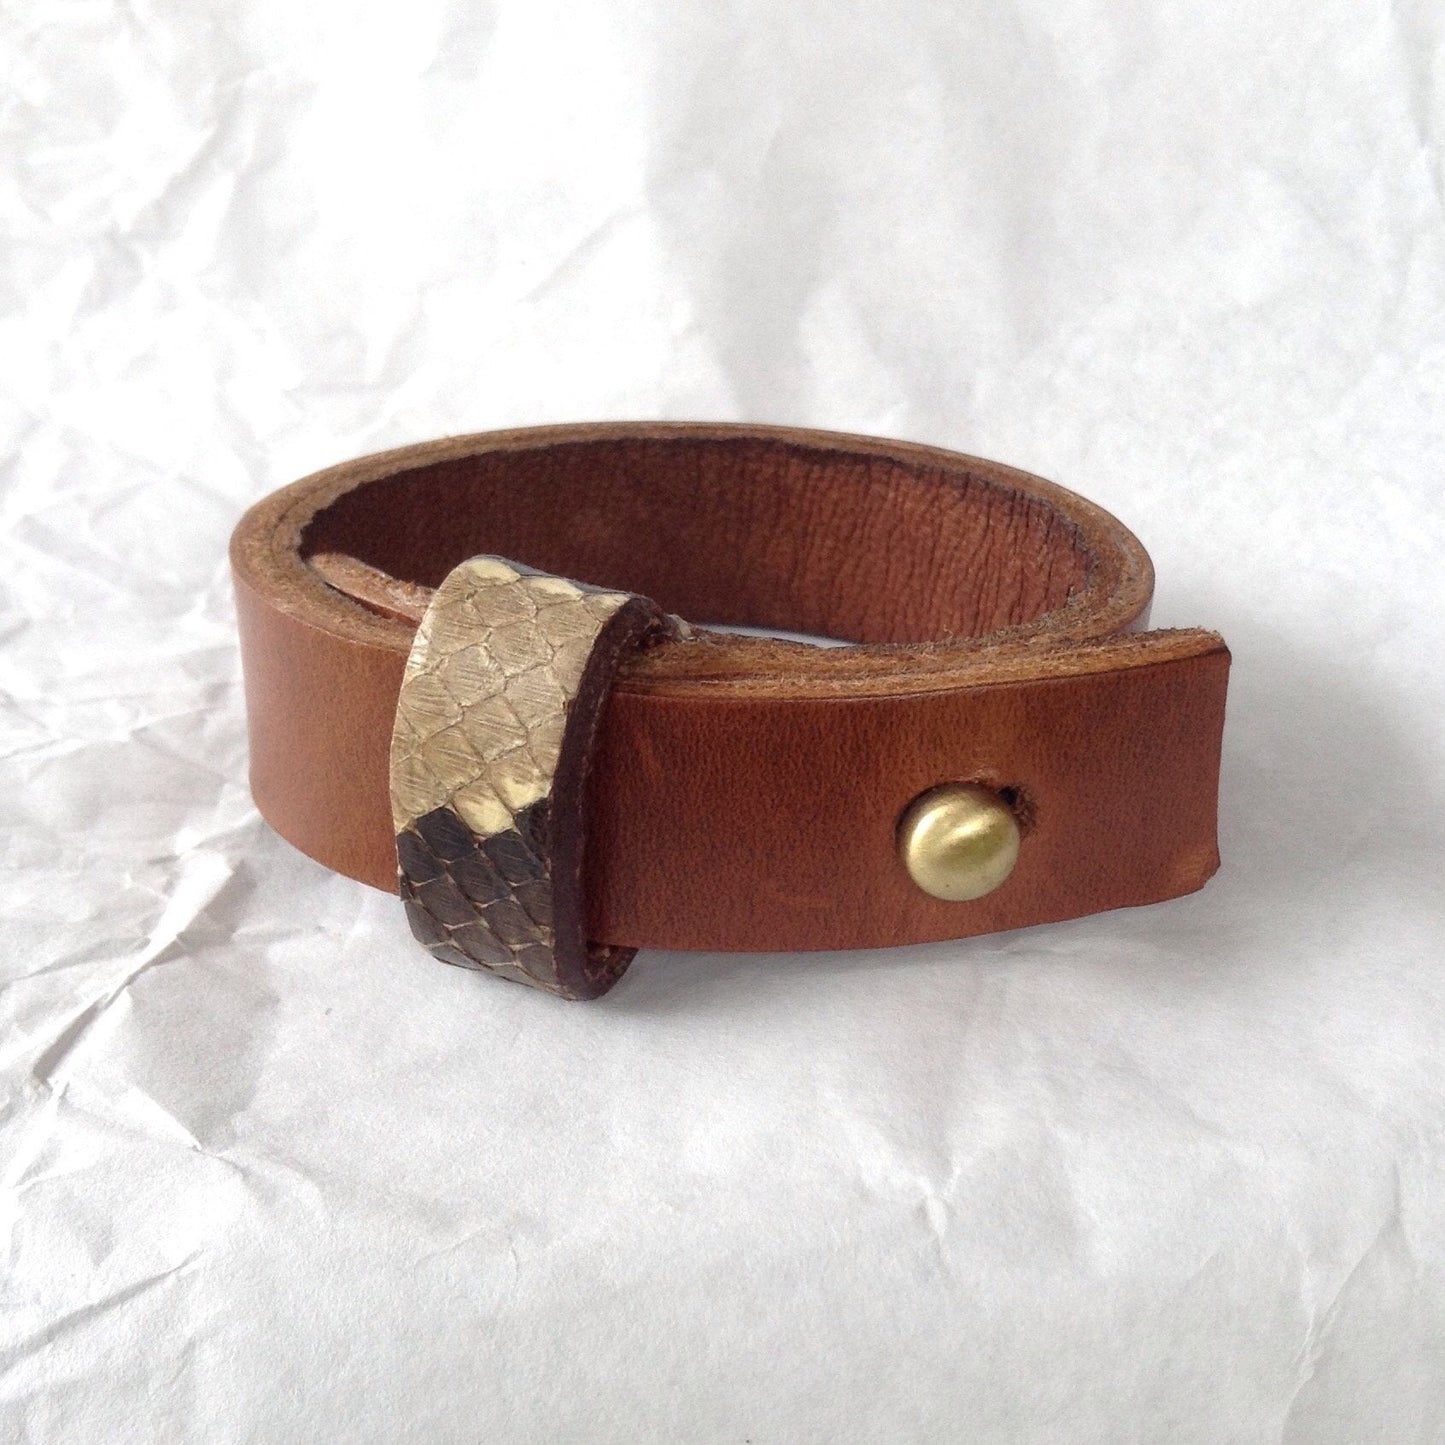 Python strap Goatskin lined Caramel leather bracelet.